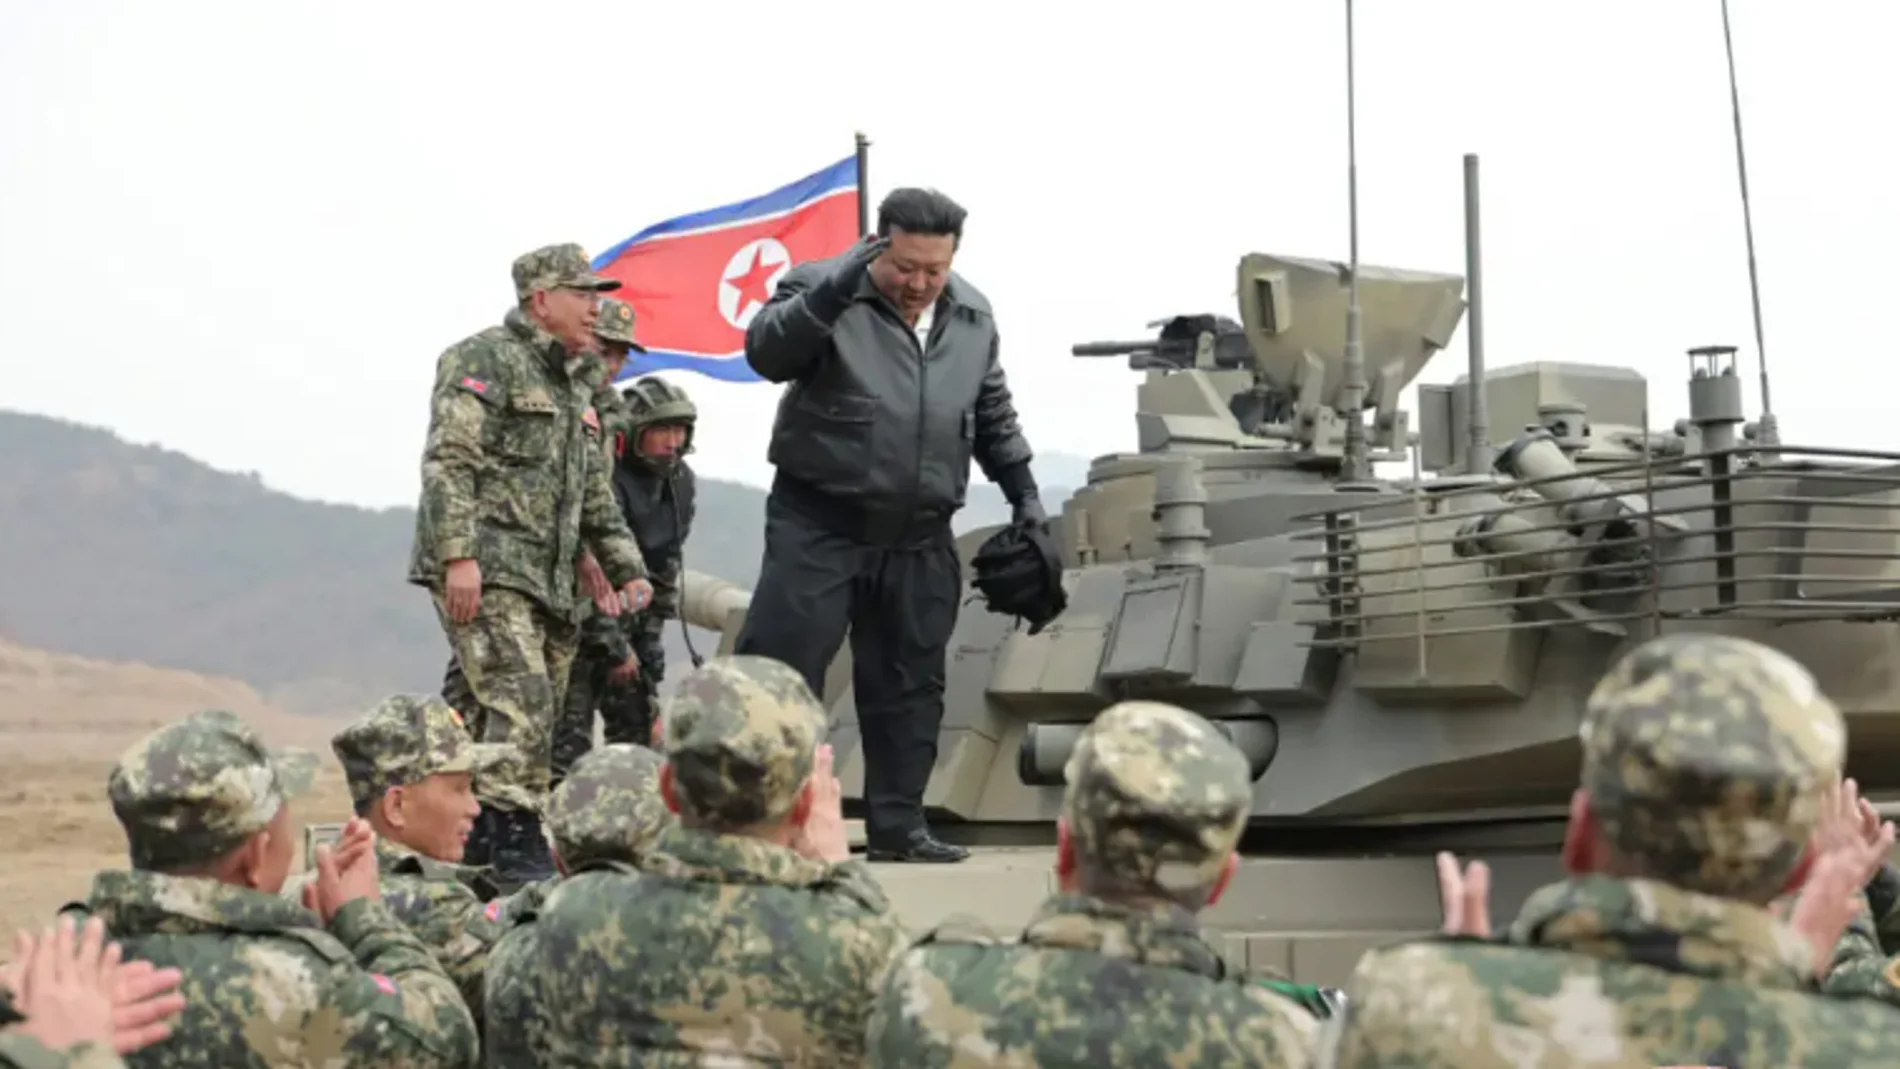 Kim Jong Un subido al nuevo tanque de Corea del Norte, inspirado en el Armata T-14 ruso